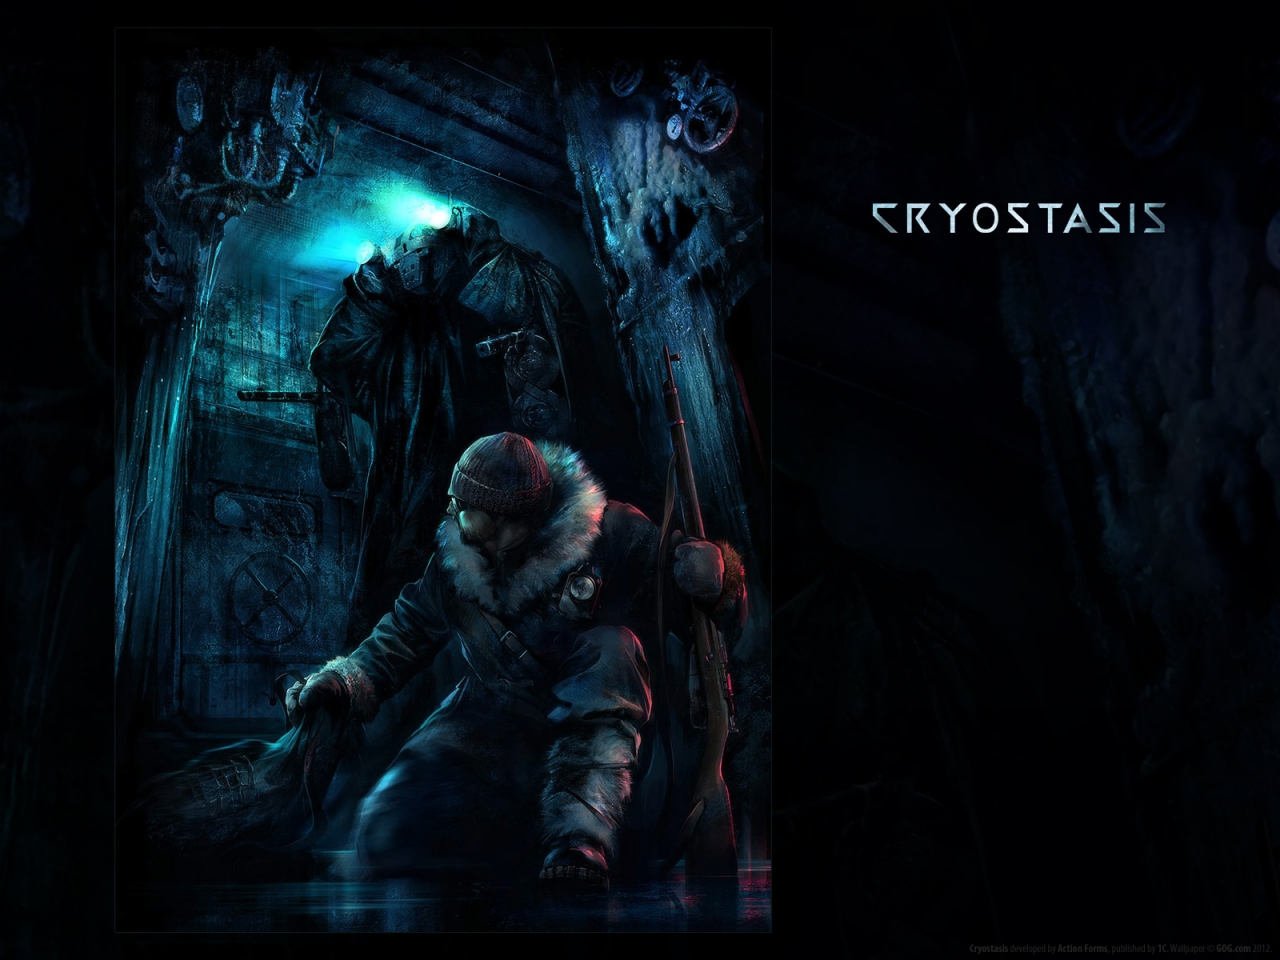 Cryostasis for 1280 x 960 resolution